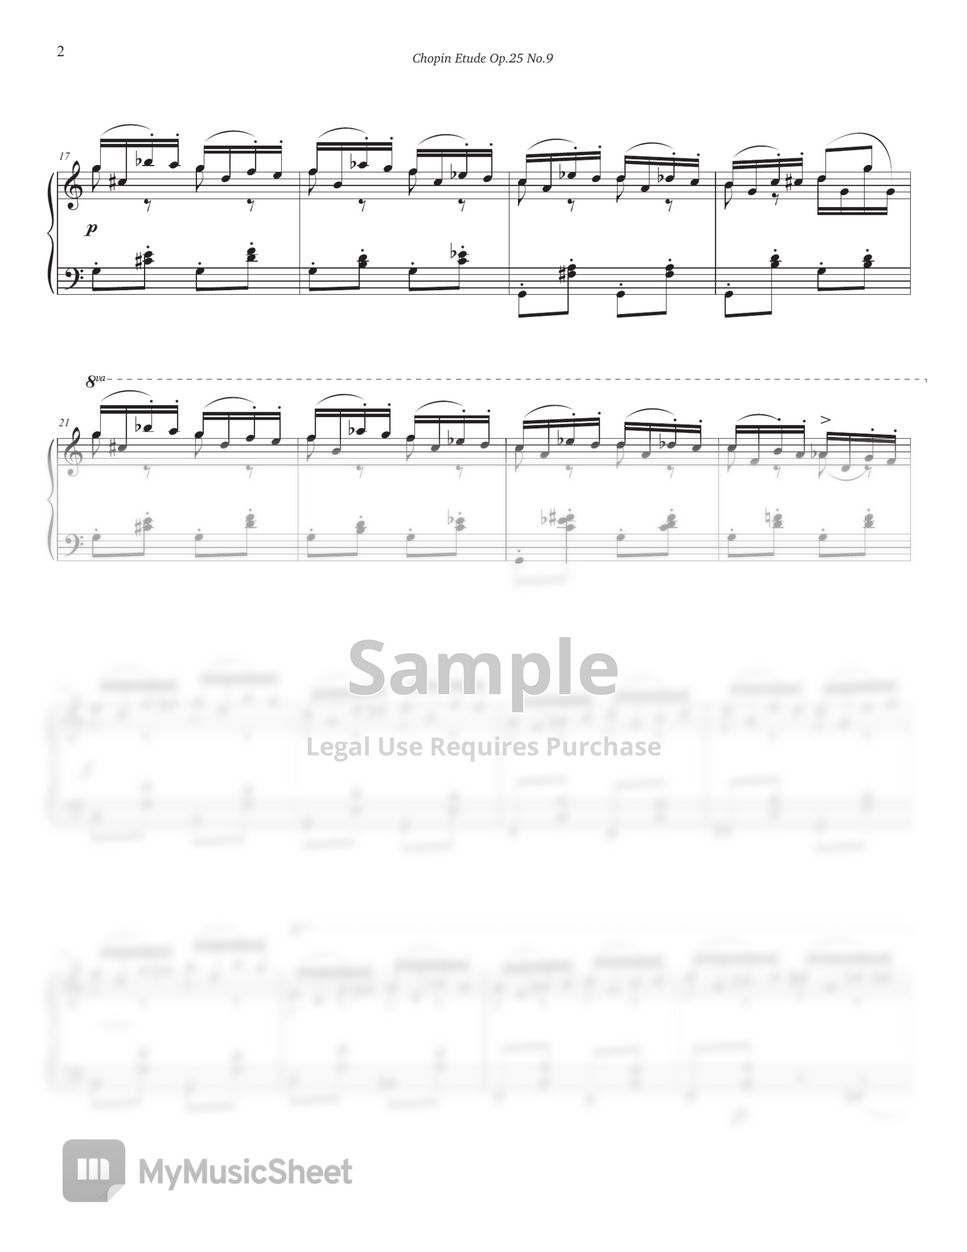 F. Chopin - Chopin Etude Op.25 No.9 (Butterfly) (Intermediate, C key) by Jinnie J